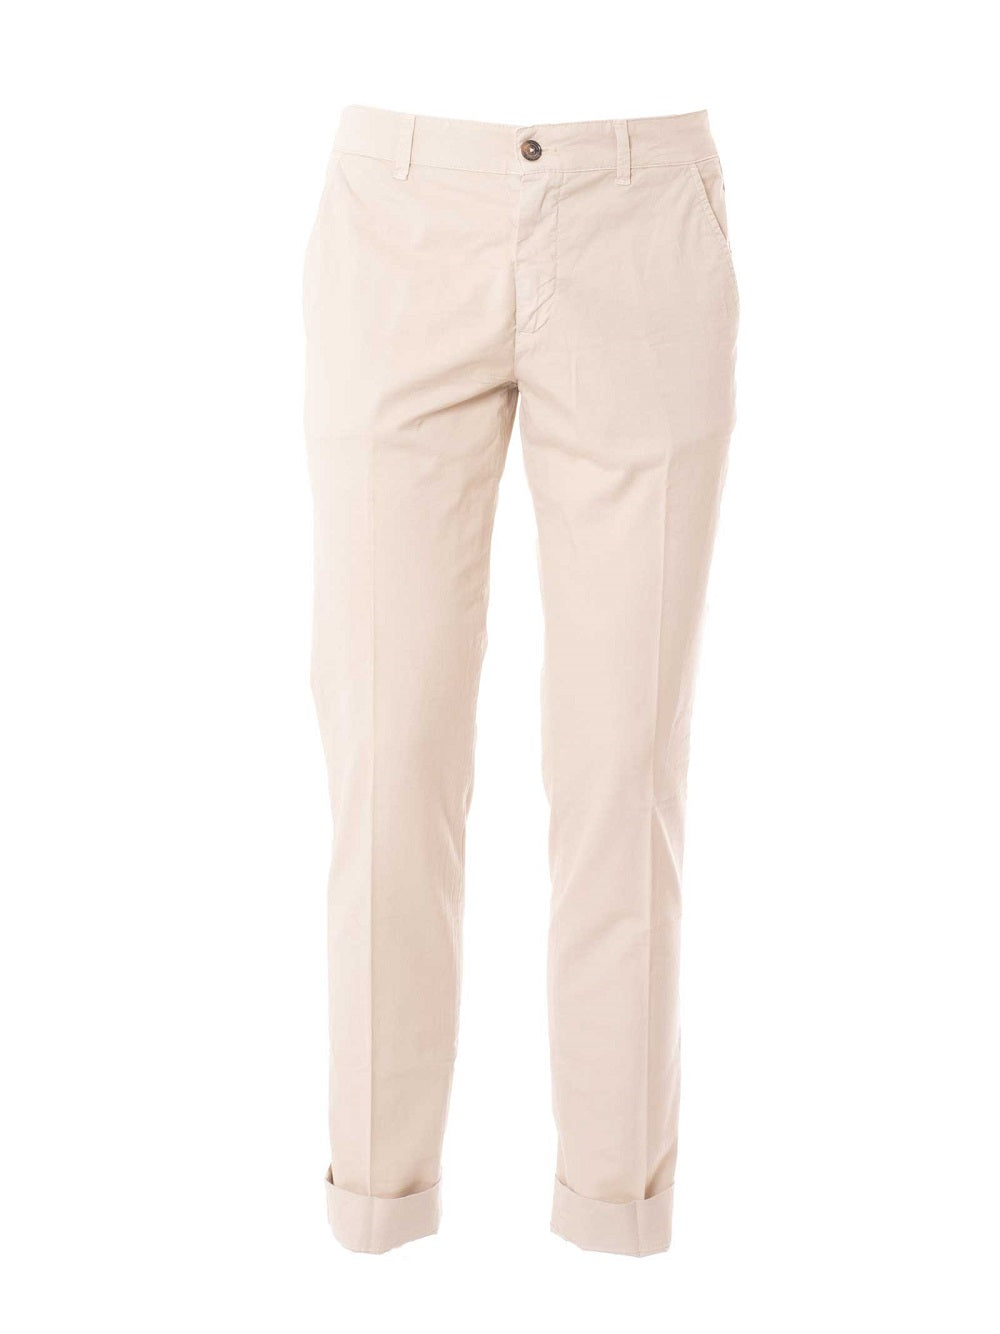 Pantaloni Henry Cotton's beige tinta unita con tasche america frontali e posteriori